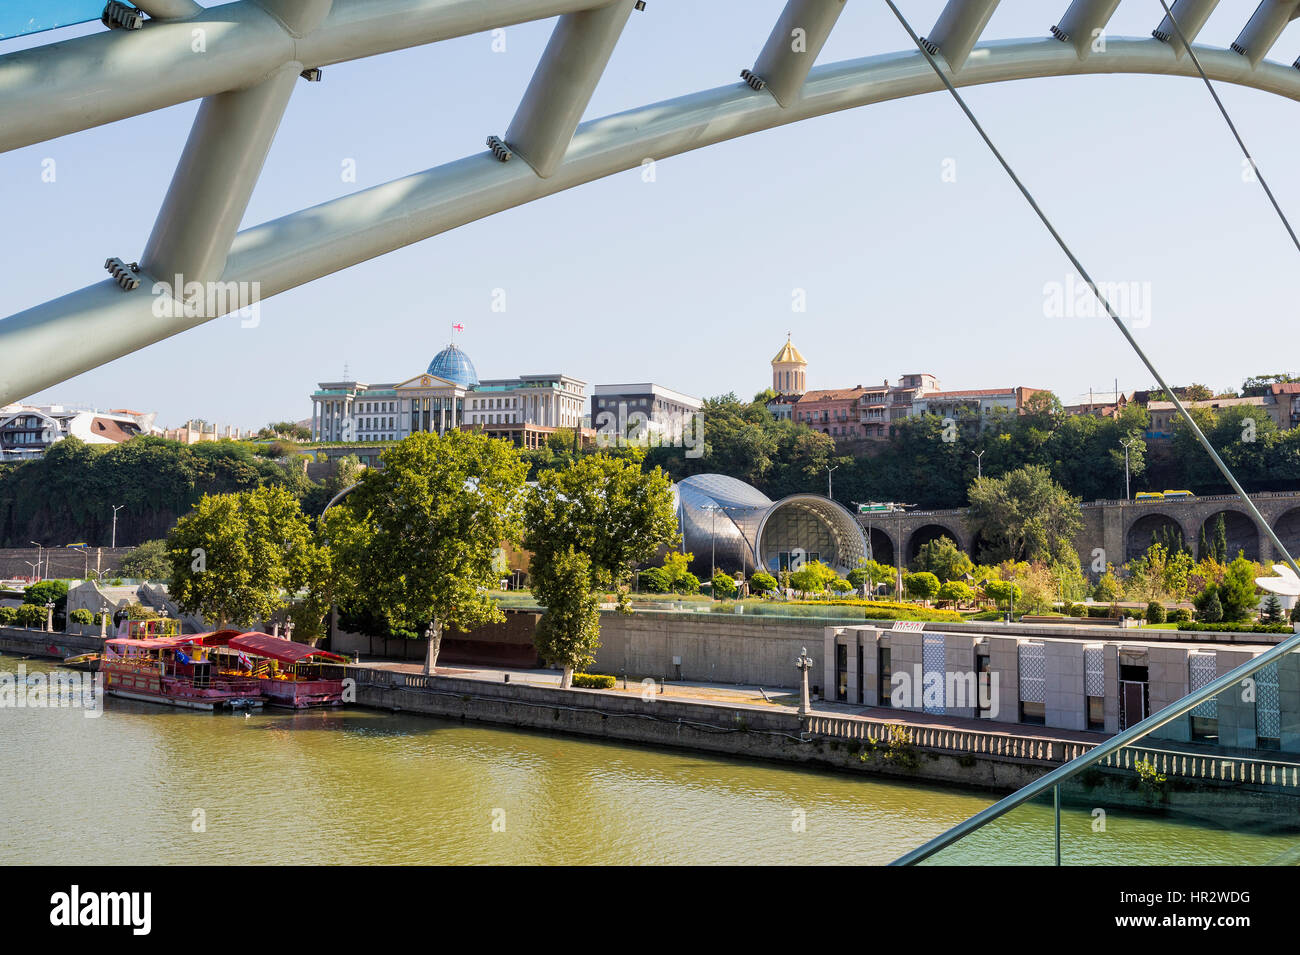 Pont de la paix sur la rivière Mtkvari, conçu par l'architecte italien Michele de Lucci, Tbilissi, Géorgie, Caucase, Moyen-Orient, Asie Banque D'Images